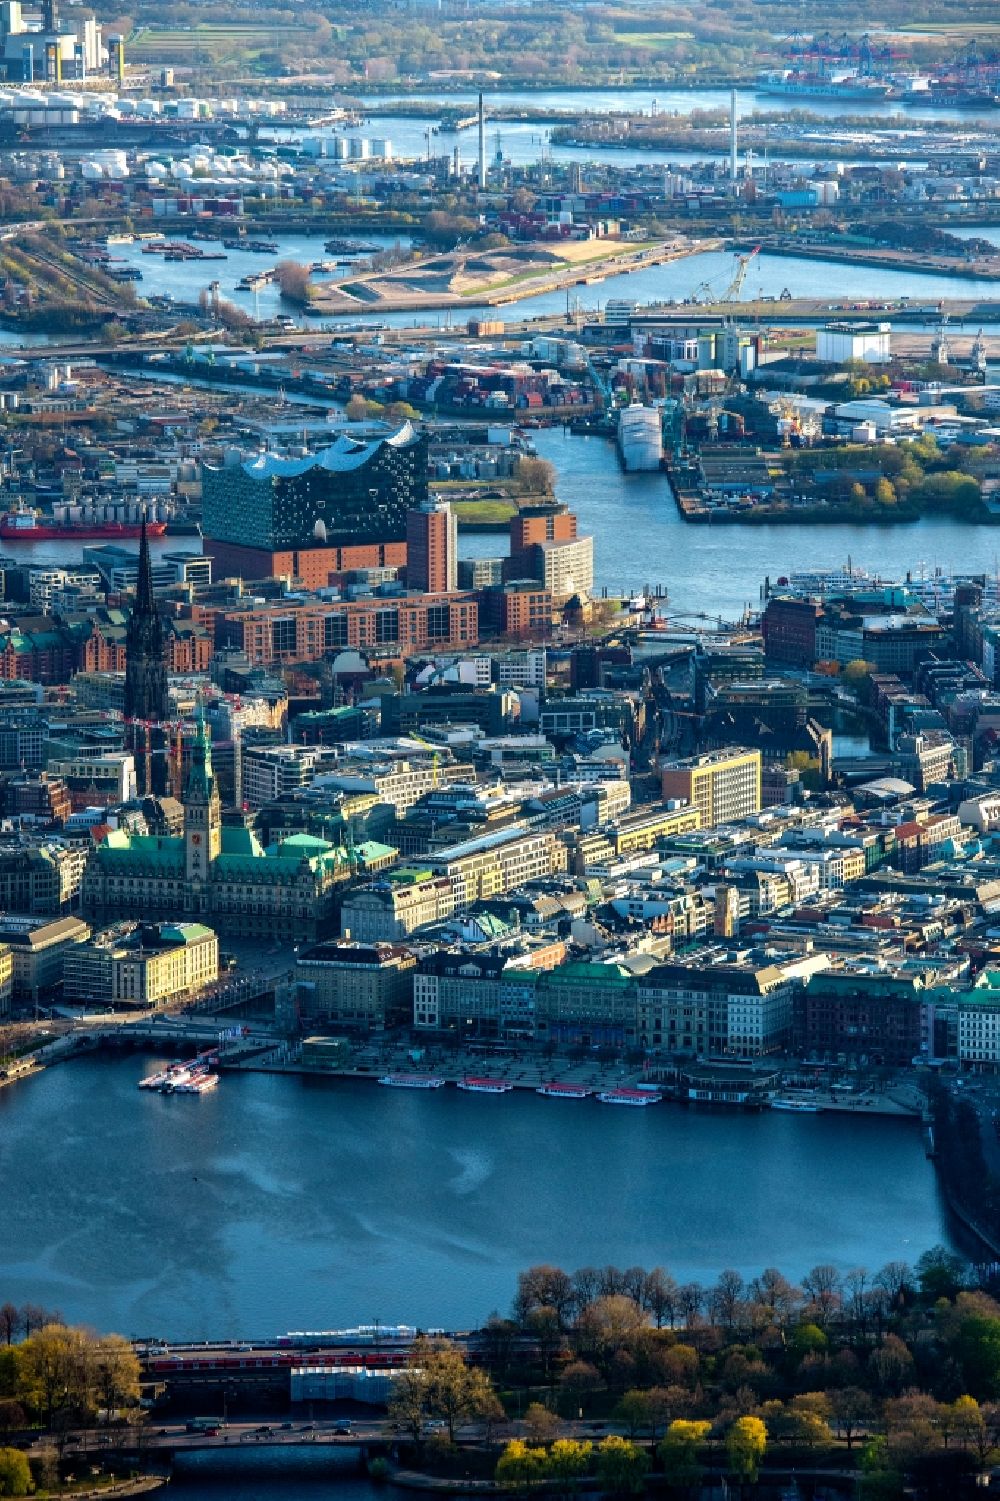 Luftbild Hamburg - Stadtansicht am Ufer des Flußverlaufes der Norderelbe im Ortsteil HafenCity mit der Elbphilharmonie in Hamburg, Deutschland